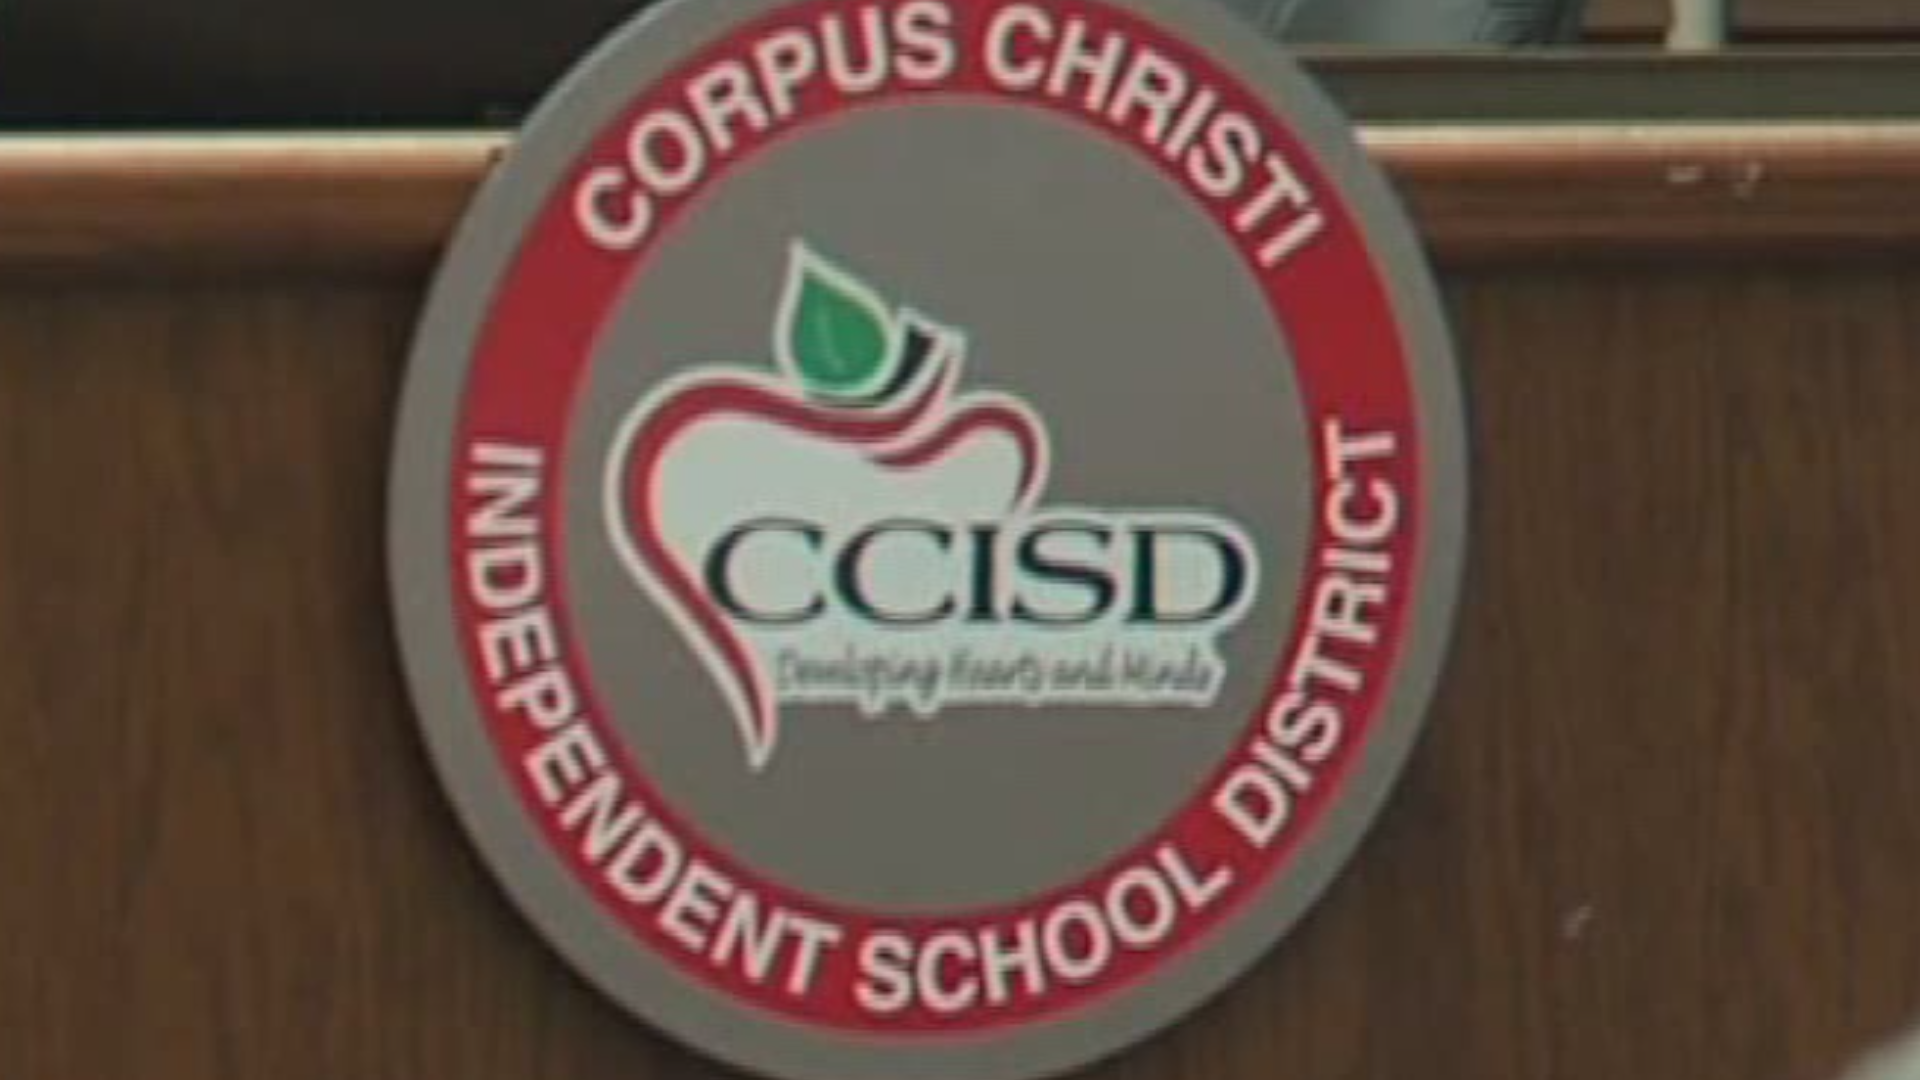 Corpus Christi ISD 2022 2023 school calendar kiiitv com